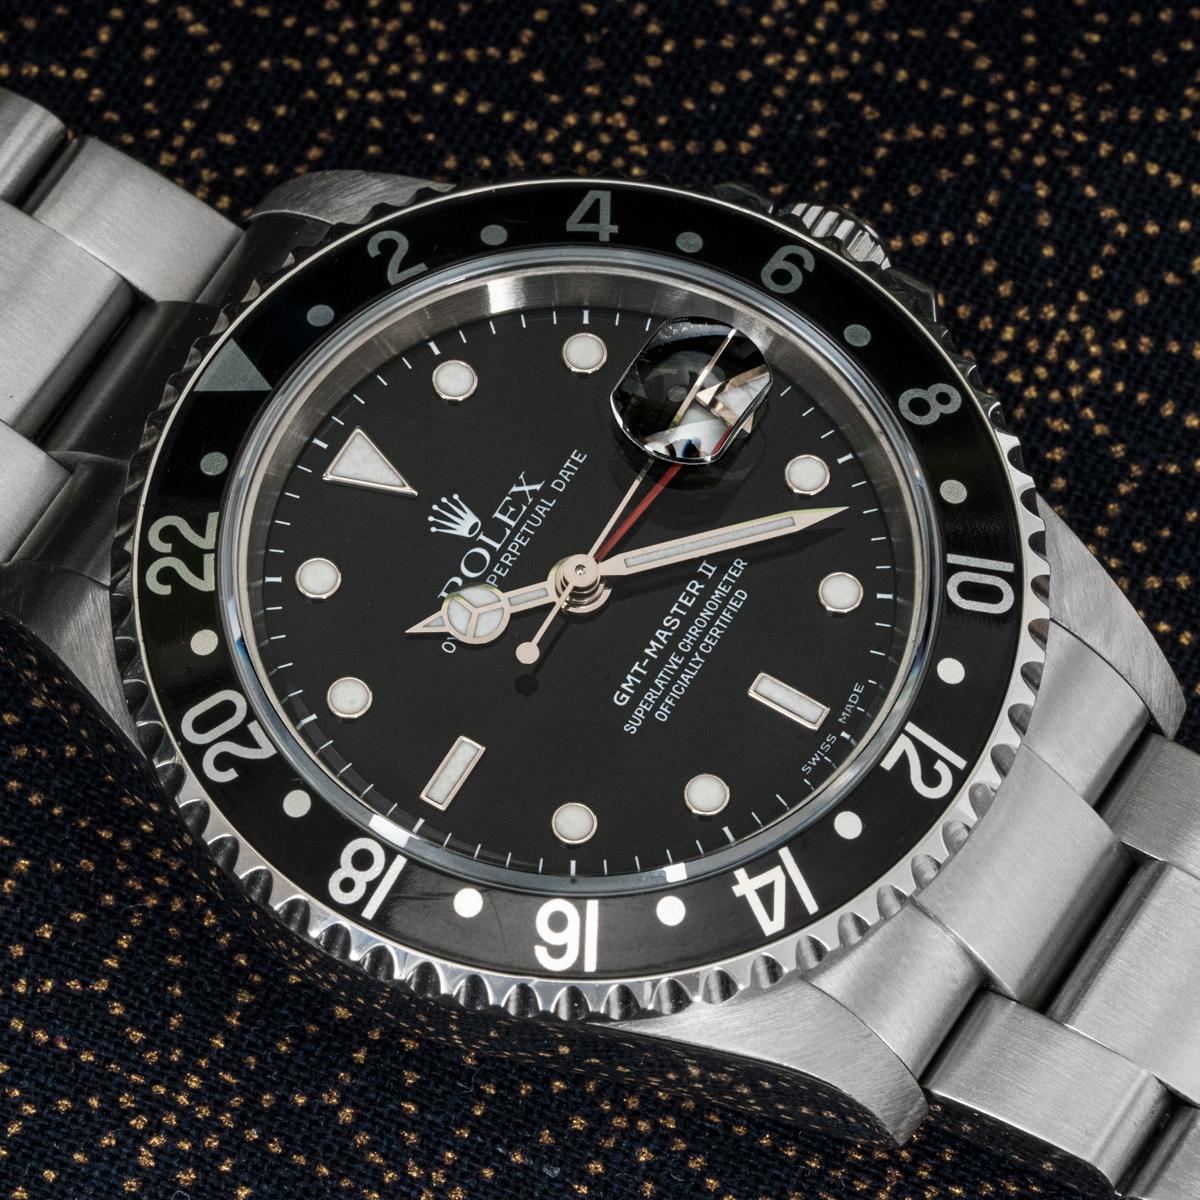 Une GMT-Master II en acier inoxydable de Rolex. Le cadran noir est doté d'un guichet de date et d'une aiguille rouge pour le second fuseau horaire. La lunette rotative bidirectionnelle est également dotée d'un affichage 24 heures.

La montre est